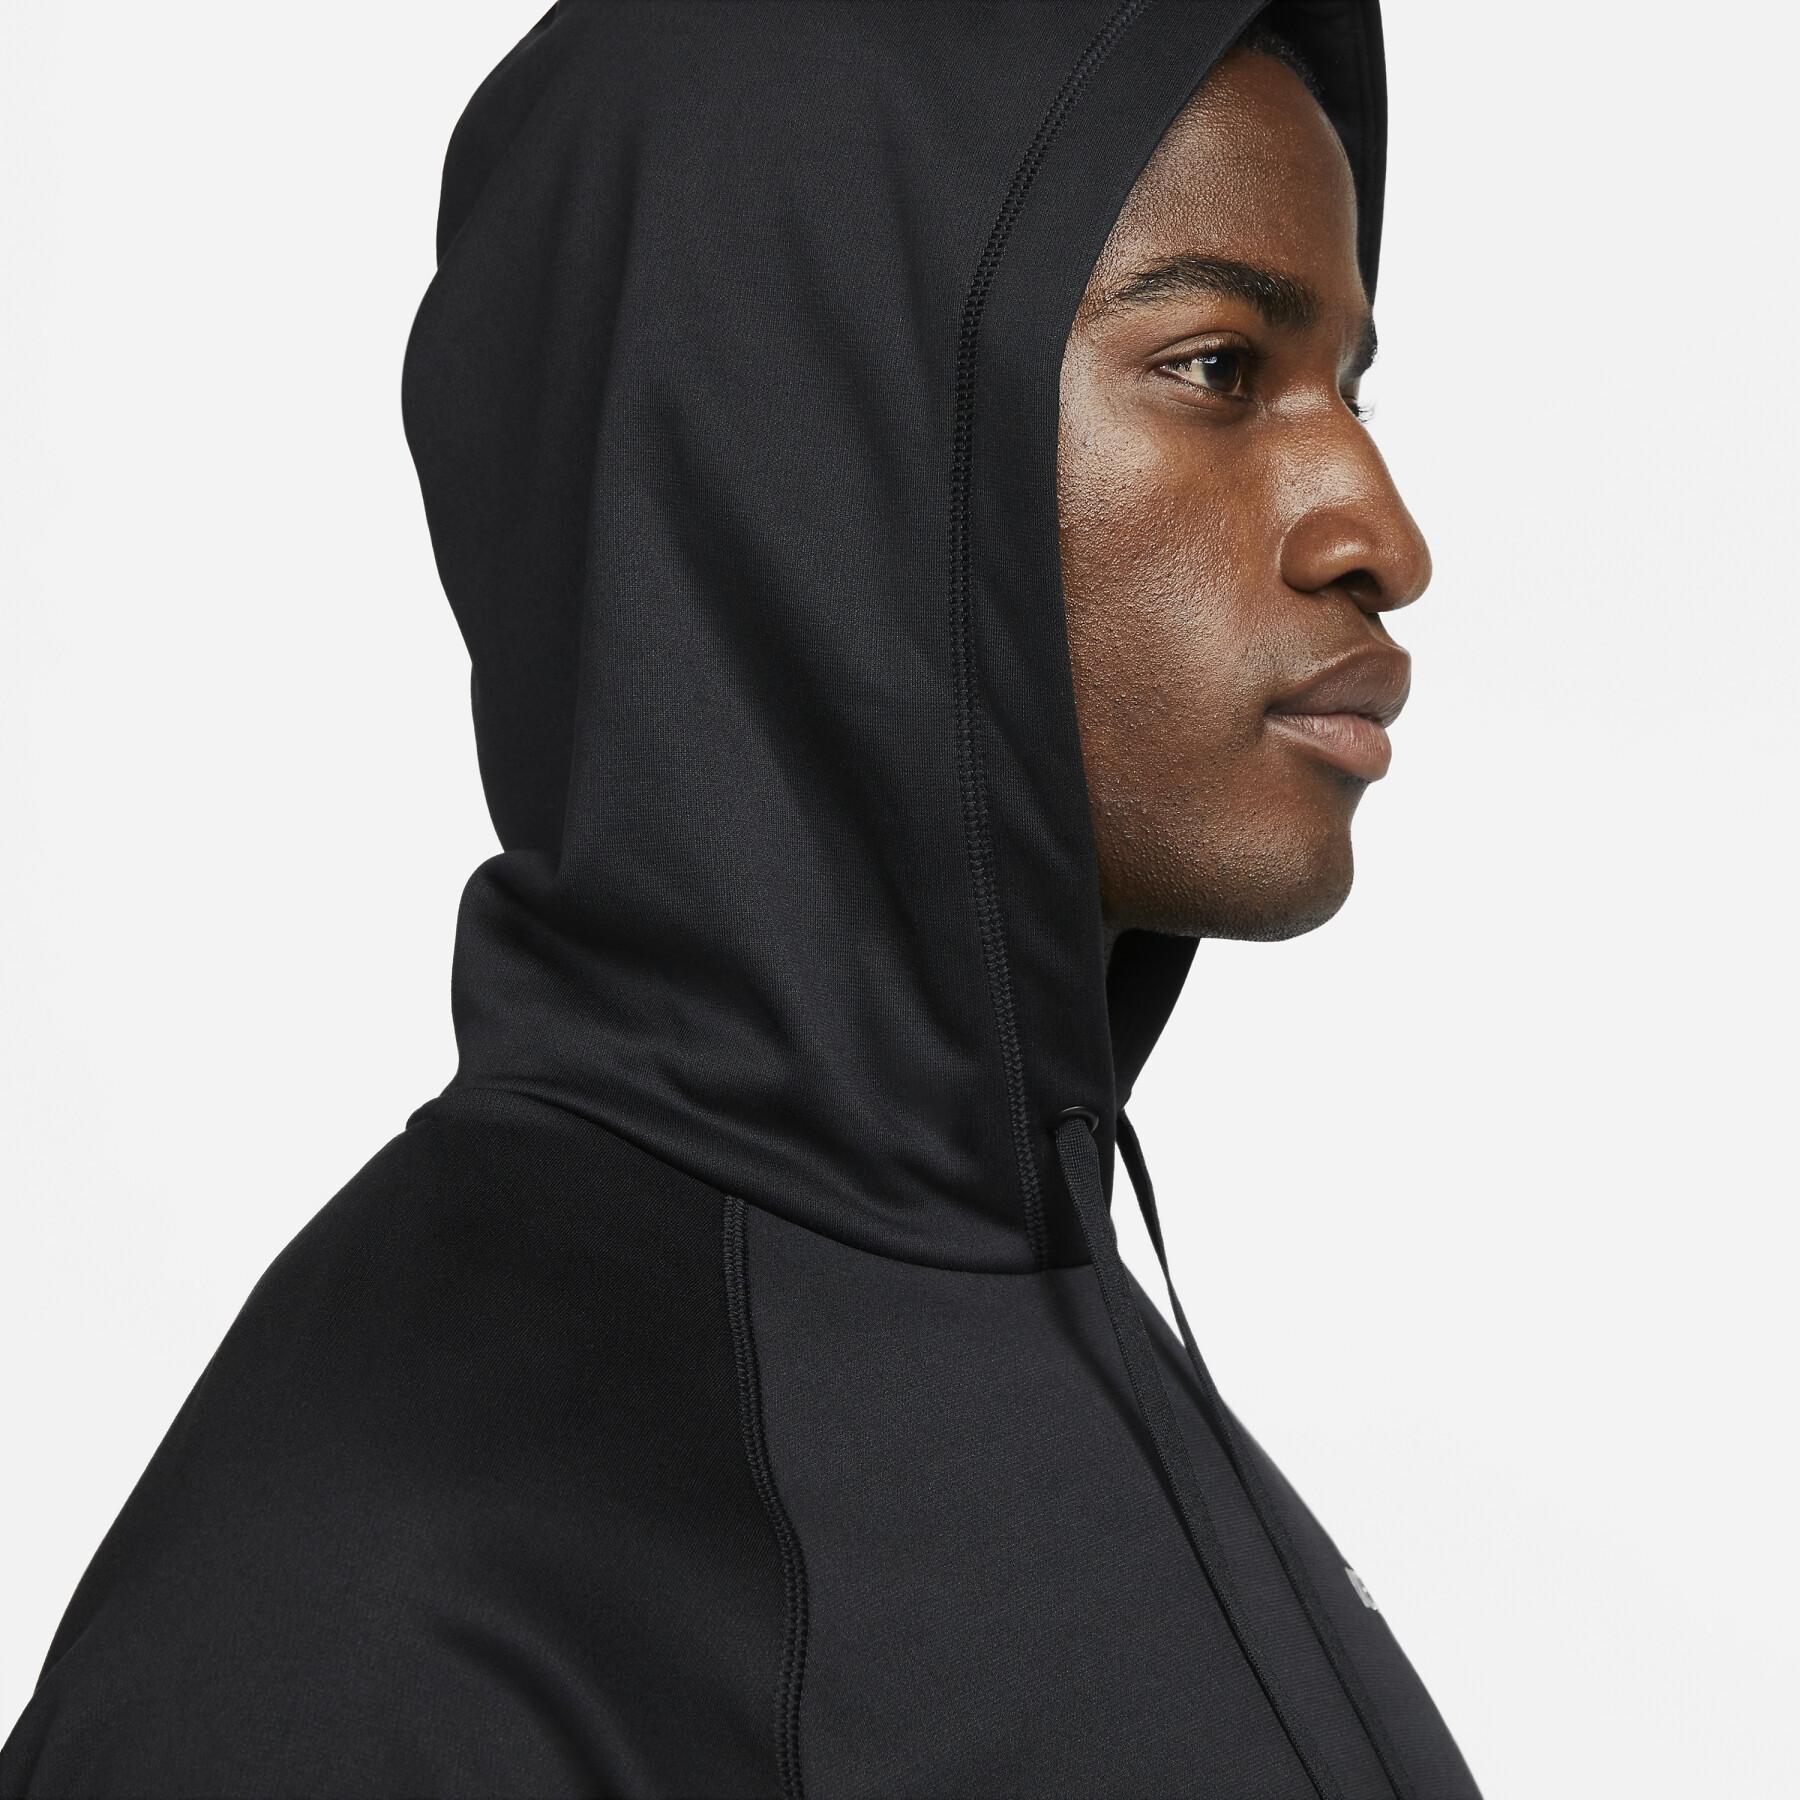 Sweatshirt Nike Thermo-Fit Fleece